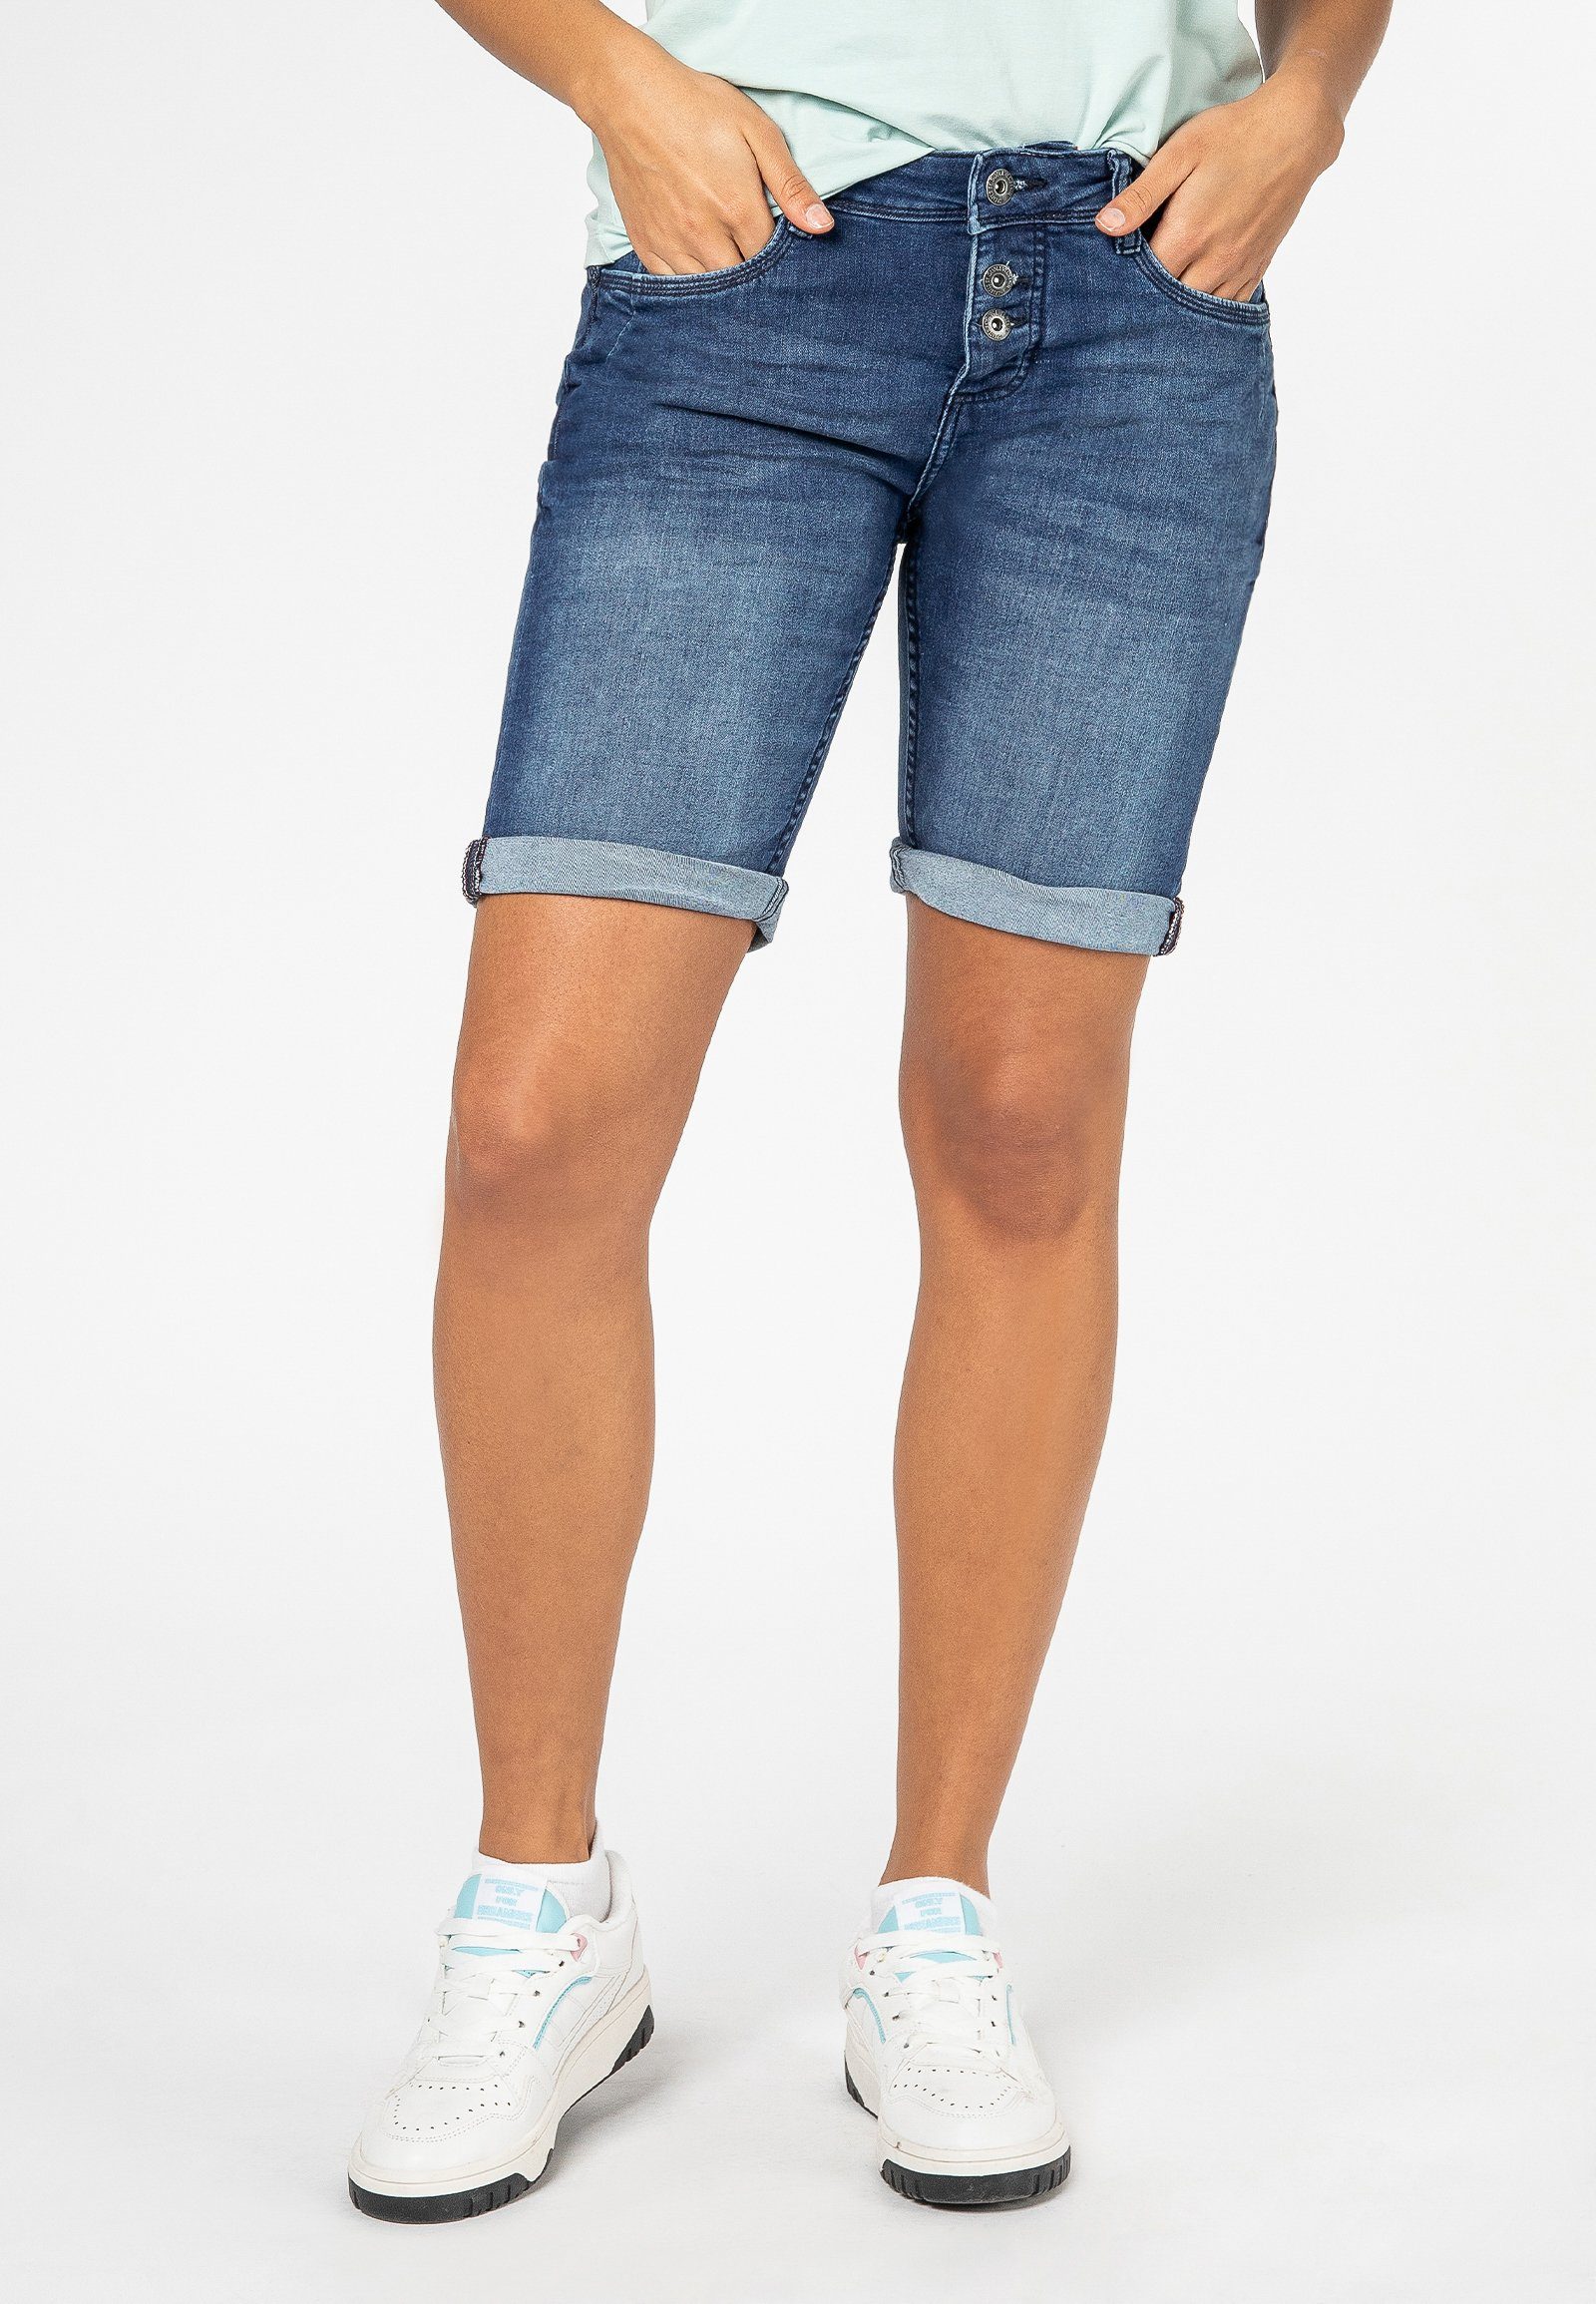 Damen Shorts online kaufen » Sommer-Trends | OTTO